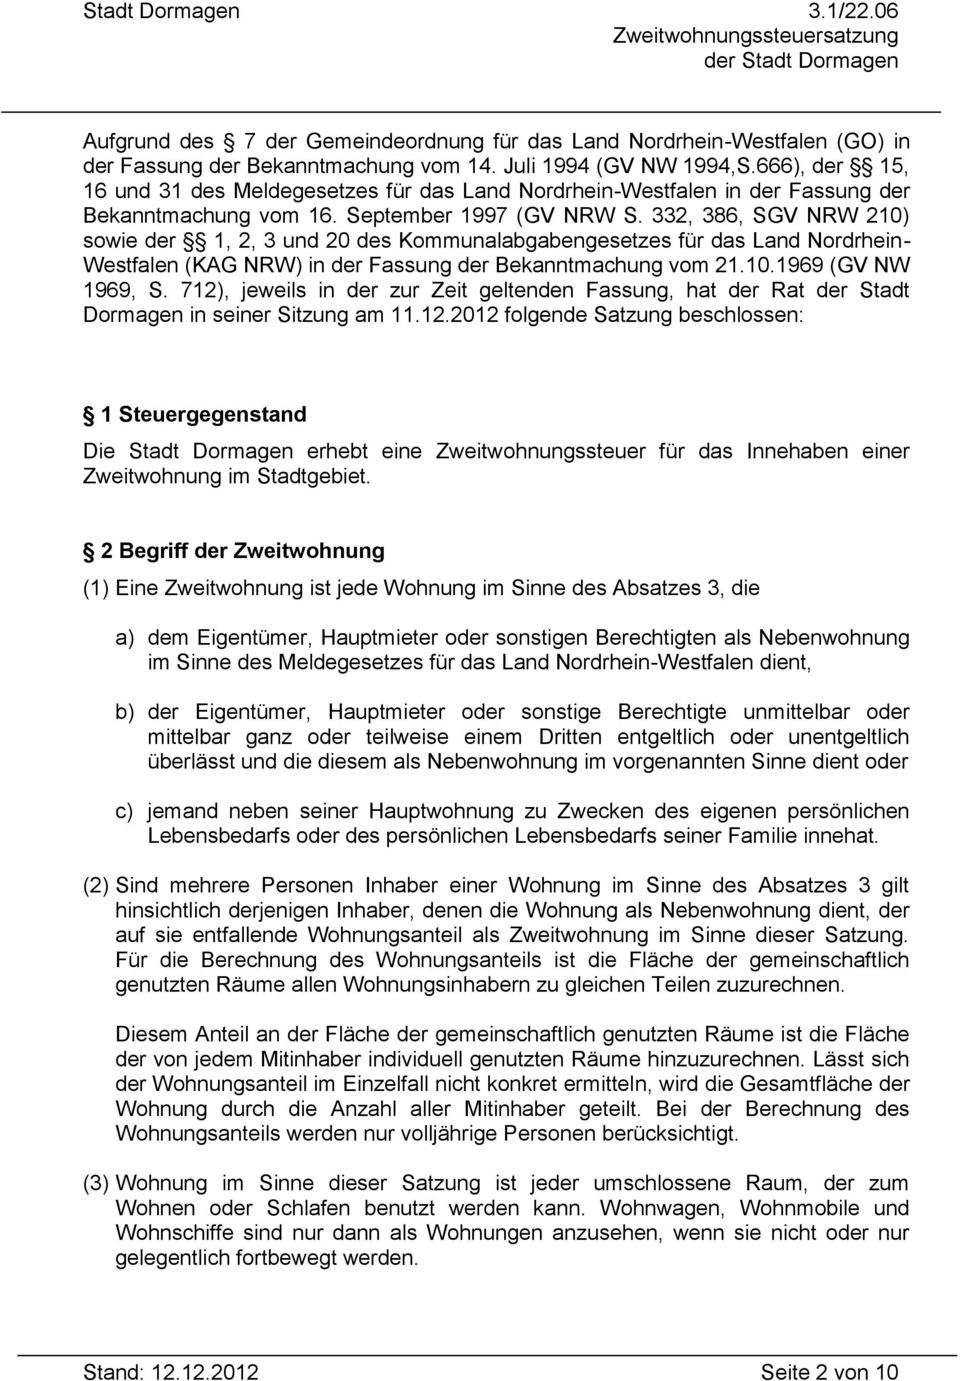 332, 386, SGV NRW 210) sowie der 1, 2, 3 und 20 des Kommunalabgabengesetzes für das Land Nordrhein- Westfalen (KAG NRW) in der Fassung der Bekanntmachung vom 21.10.1969 (GV NW 1969, S.